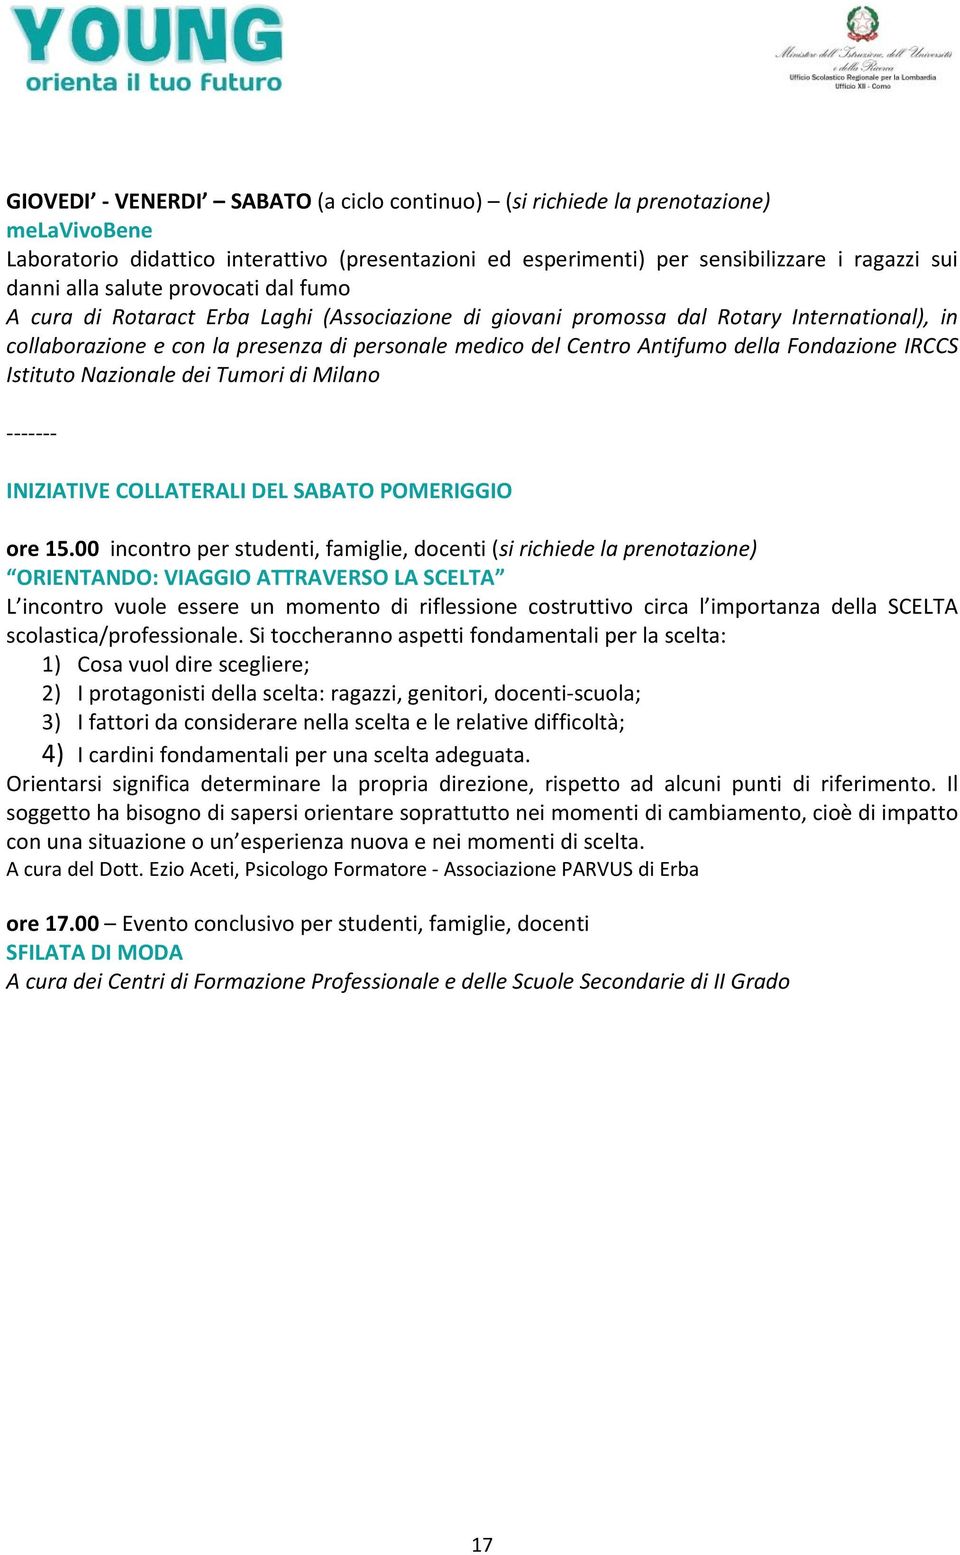 Fondazione IRCCS Istituto Nazionale dei Tumori di Milano INIZIATIVE COLLATERALI DEL SABATO POMERIGGIO ore 15.